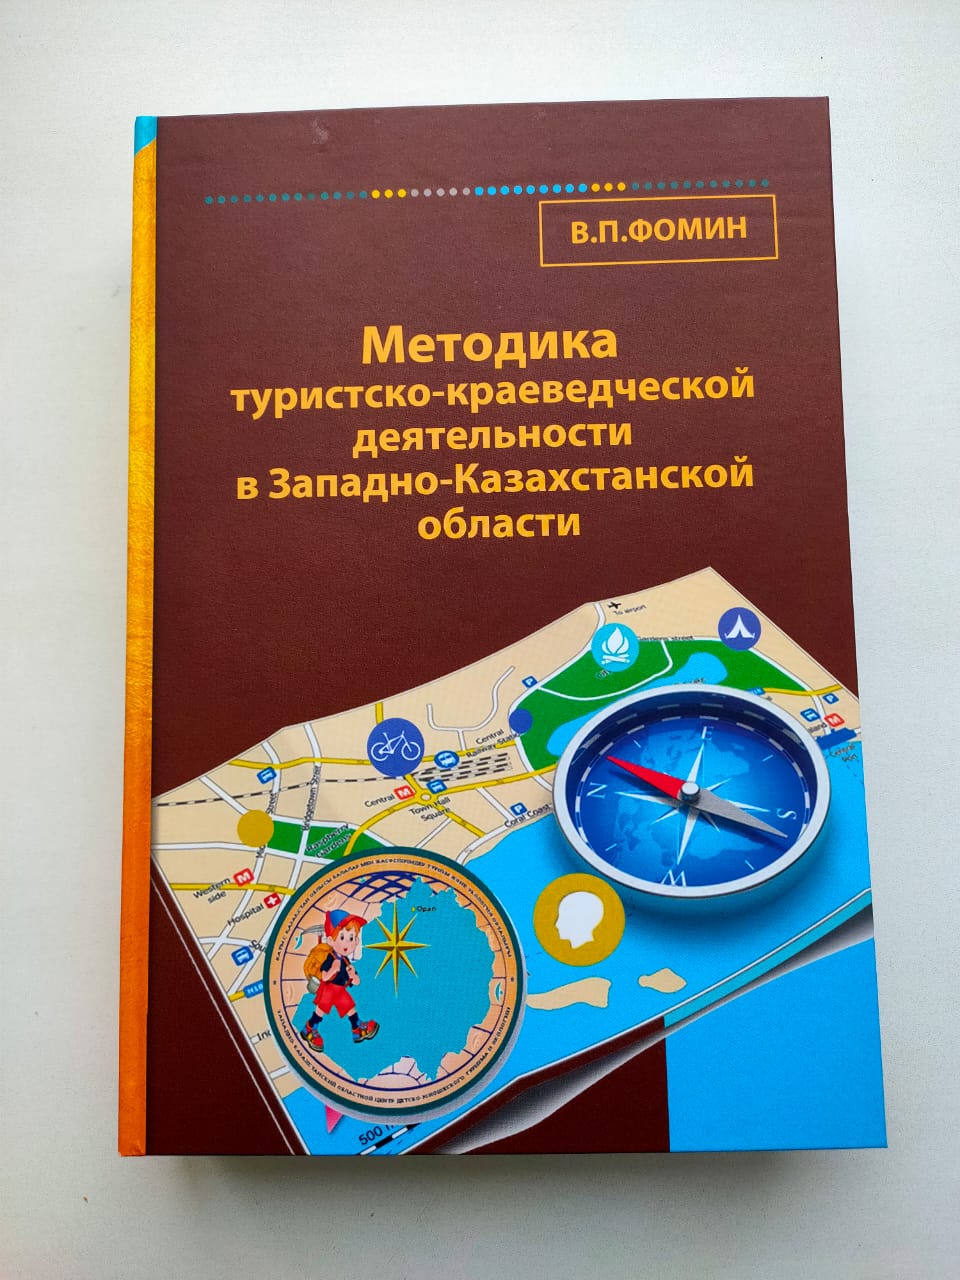 Вышла в свет книга «Методика туристско–краеведческой деятельности в Западно-Казахстанской области»